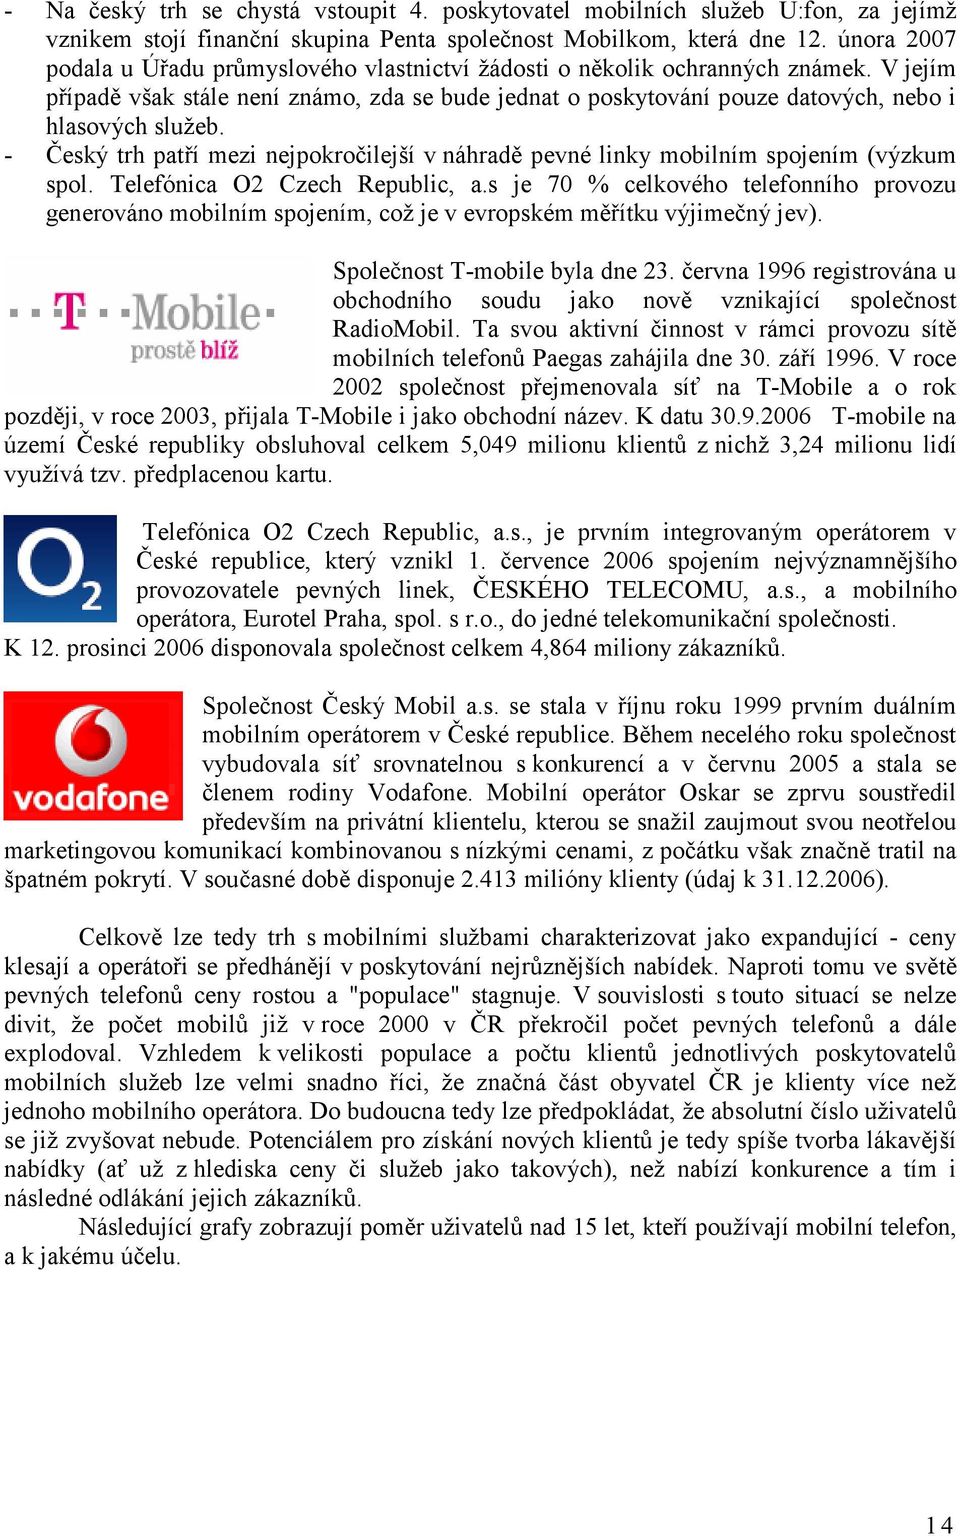 - Český trh patří mezi nejpokročilejší v náhradě pevné linky mobilním spojením (výzkum spol. Telefónica O2 Czech Republic, a.